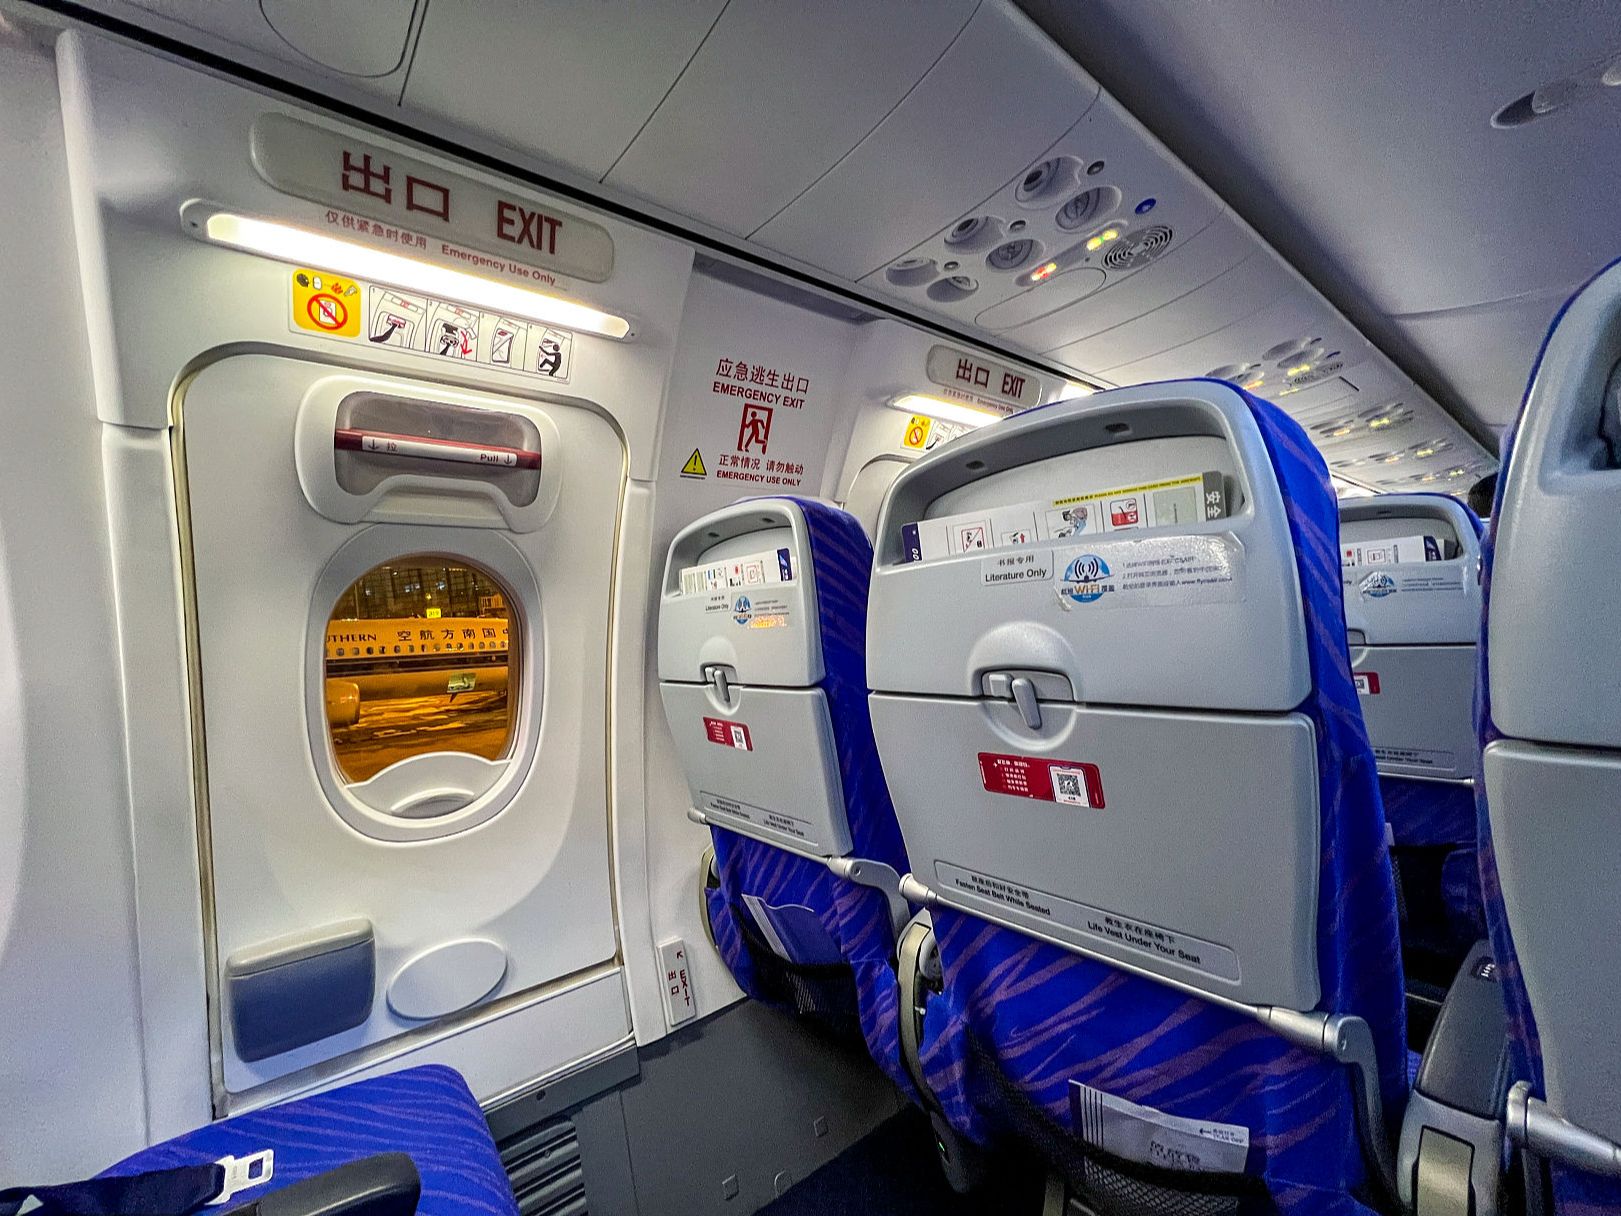 Hàn Quốc: Sử dụng ma túy đá, hành khách cố gắng mở cửa thoát hiểm máy bay trên không - Ảnh 2.